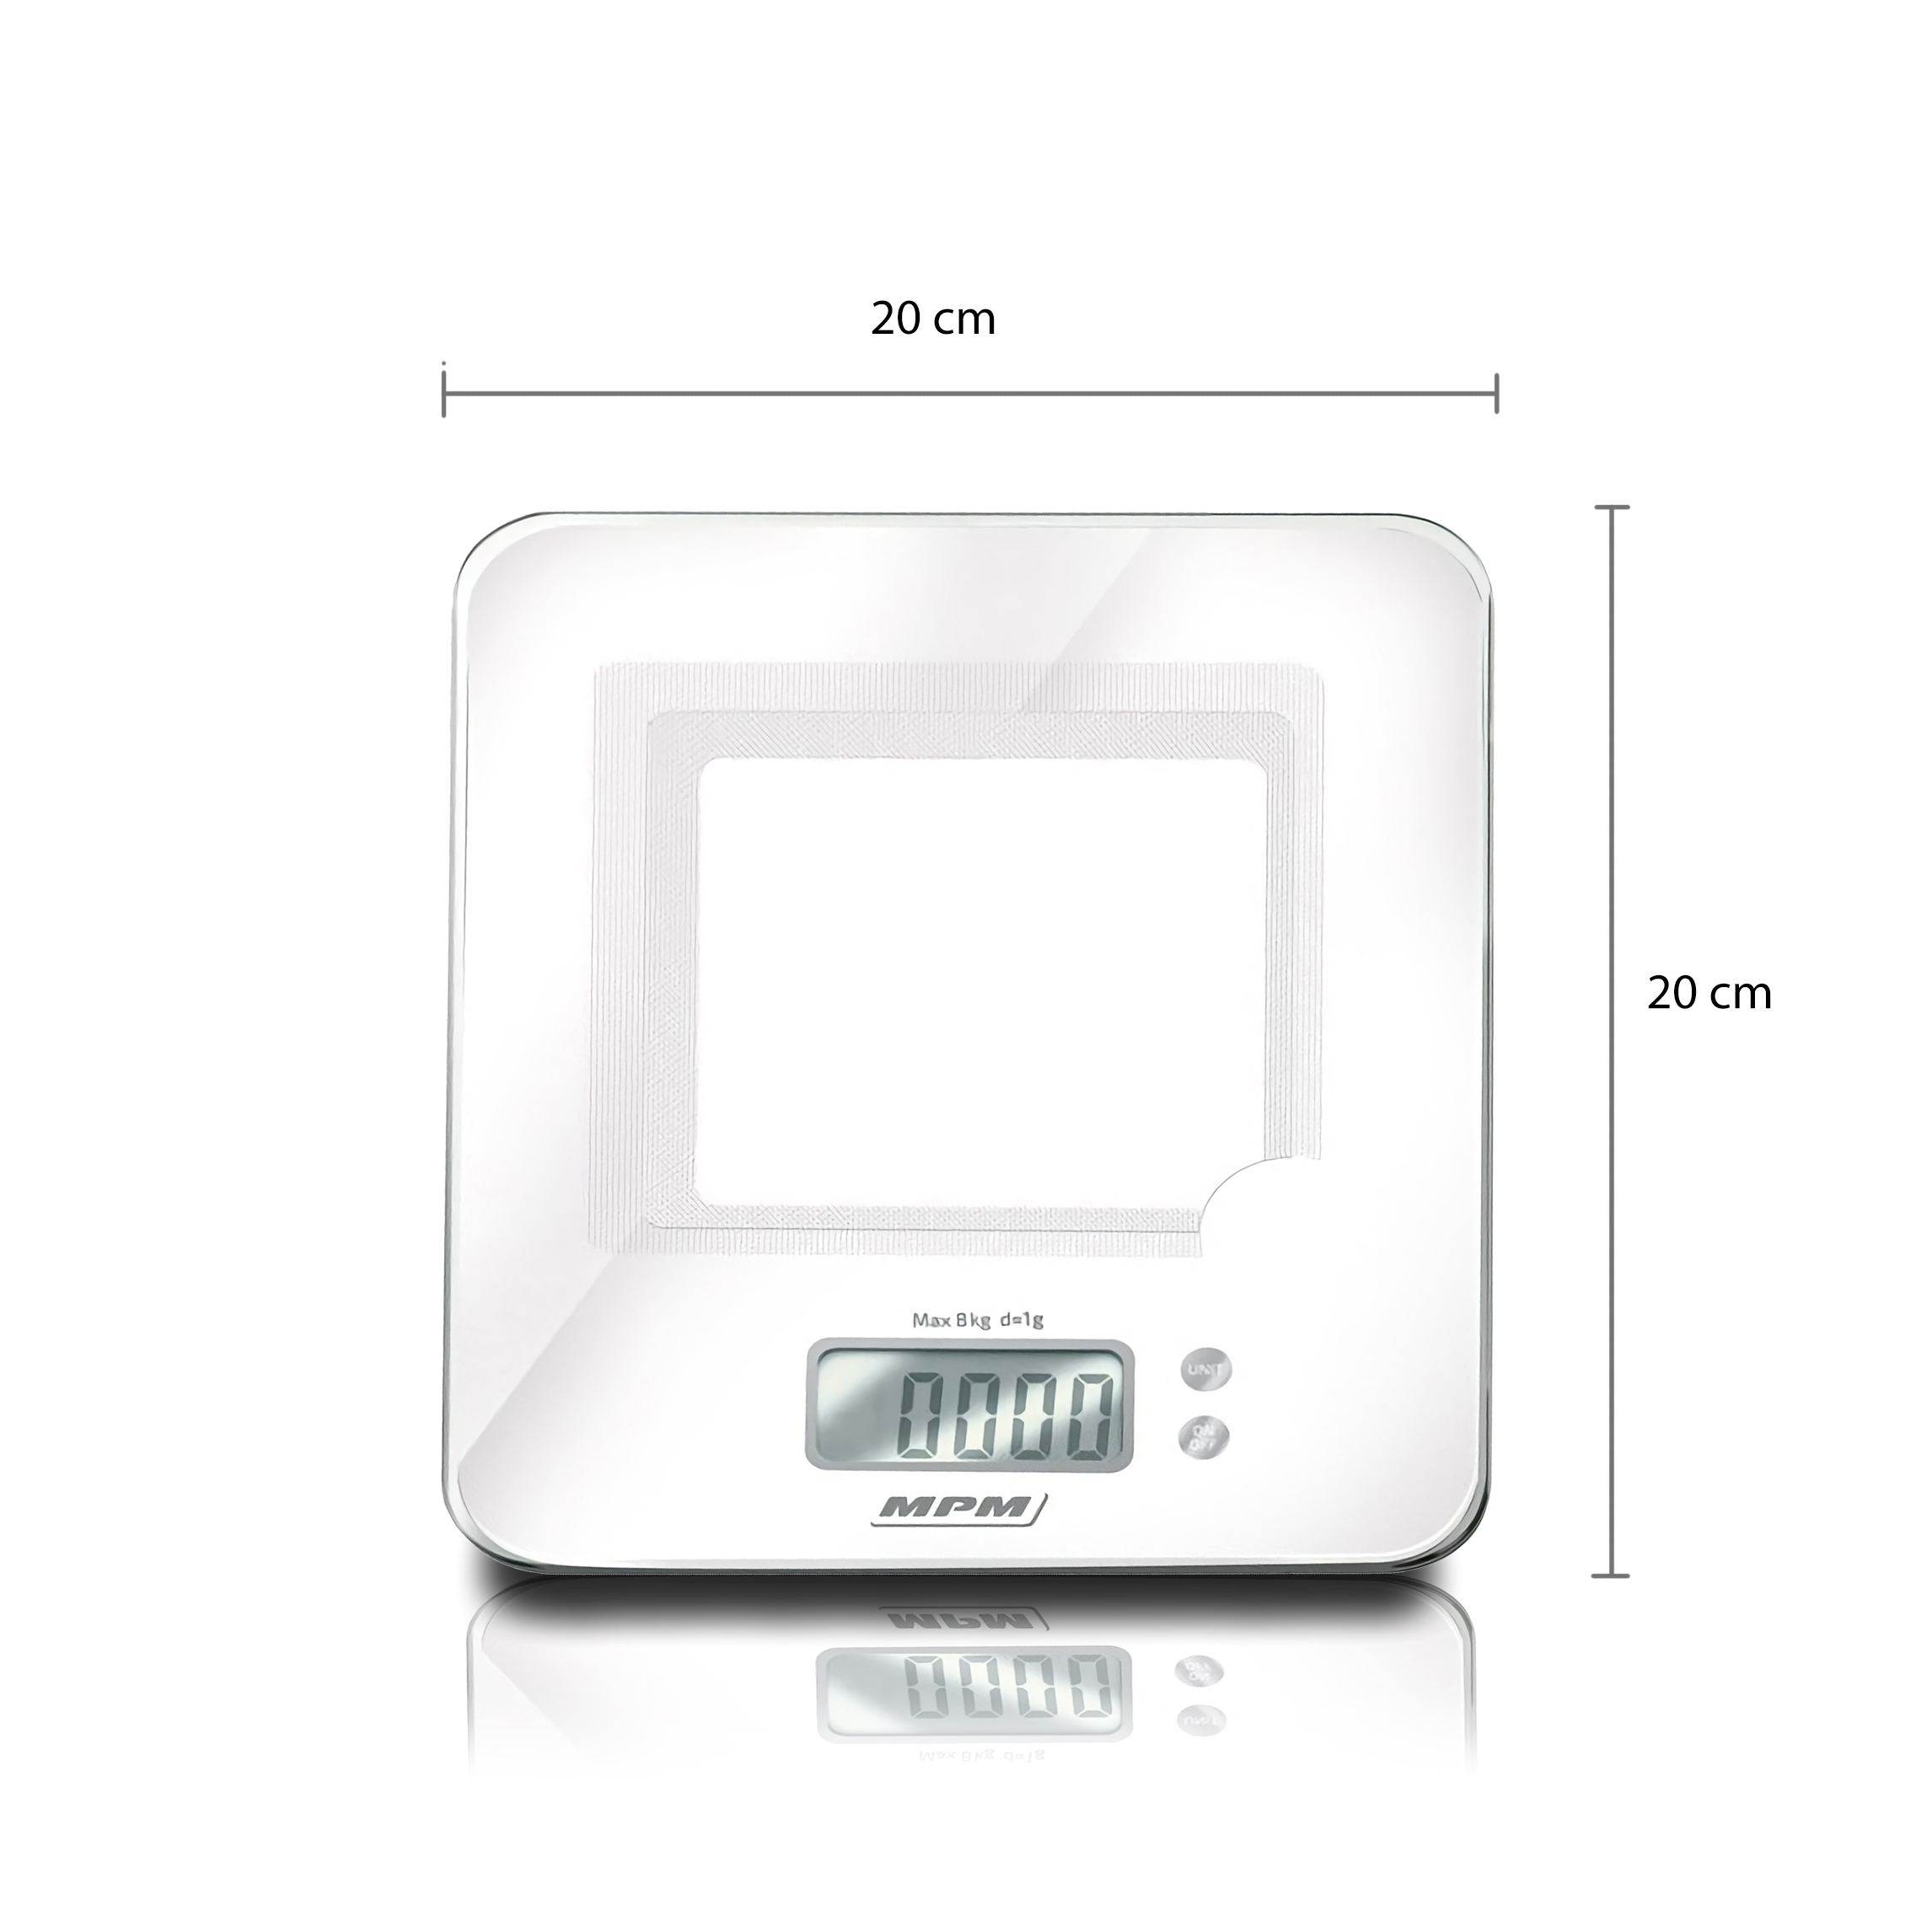 MPM MWK-02M Báscula de cocina digital de acero inoxidable, alta precisión pasos 1g pesa alimentos hasta 5Kg, display LCD, función tara, multifunción